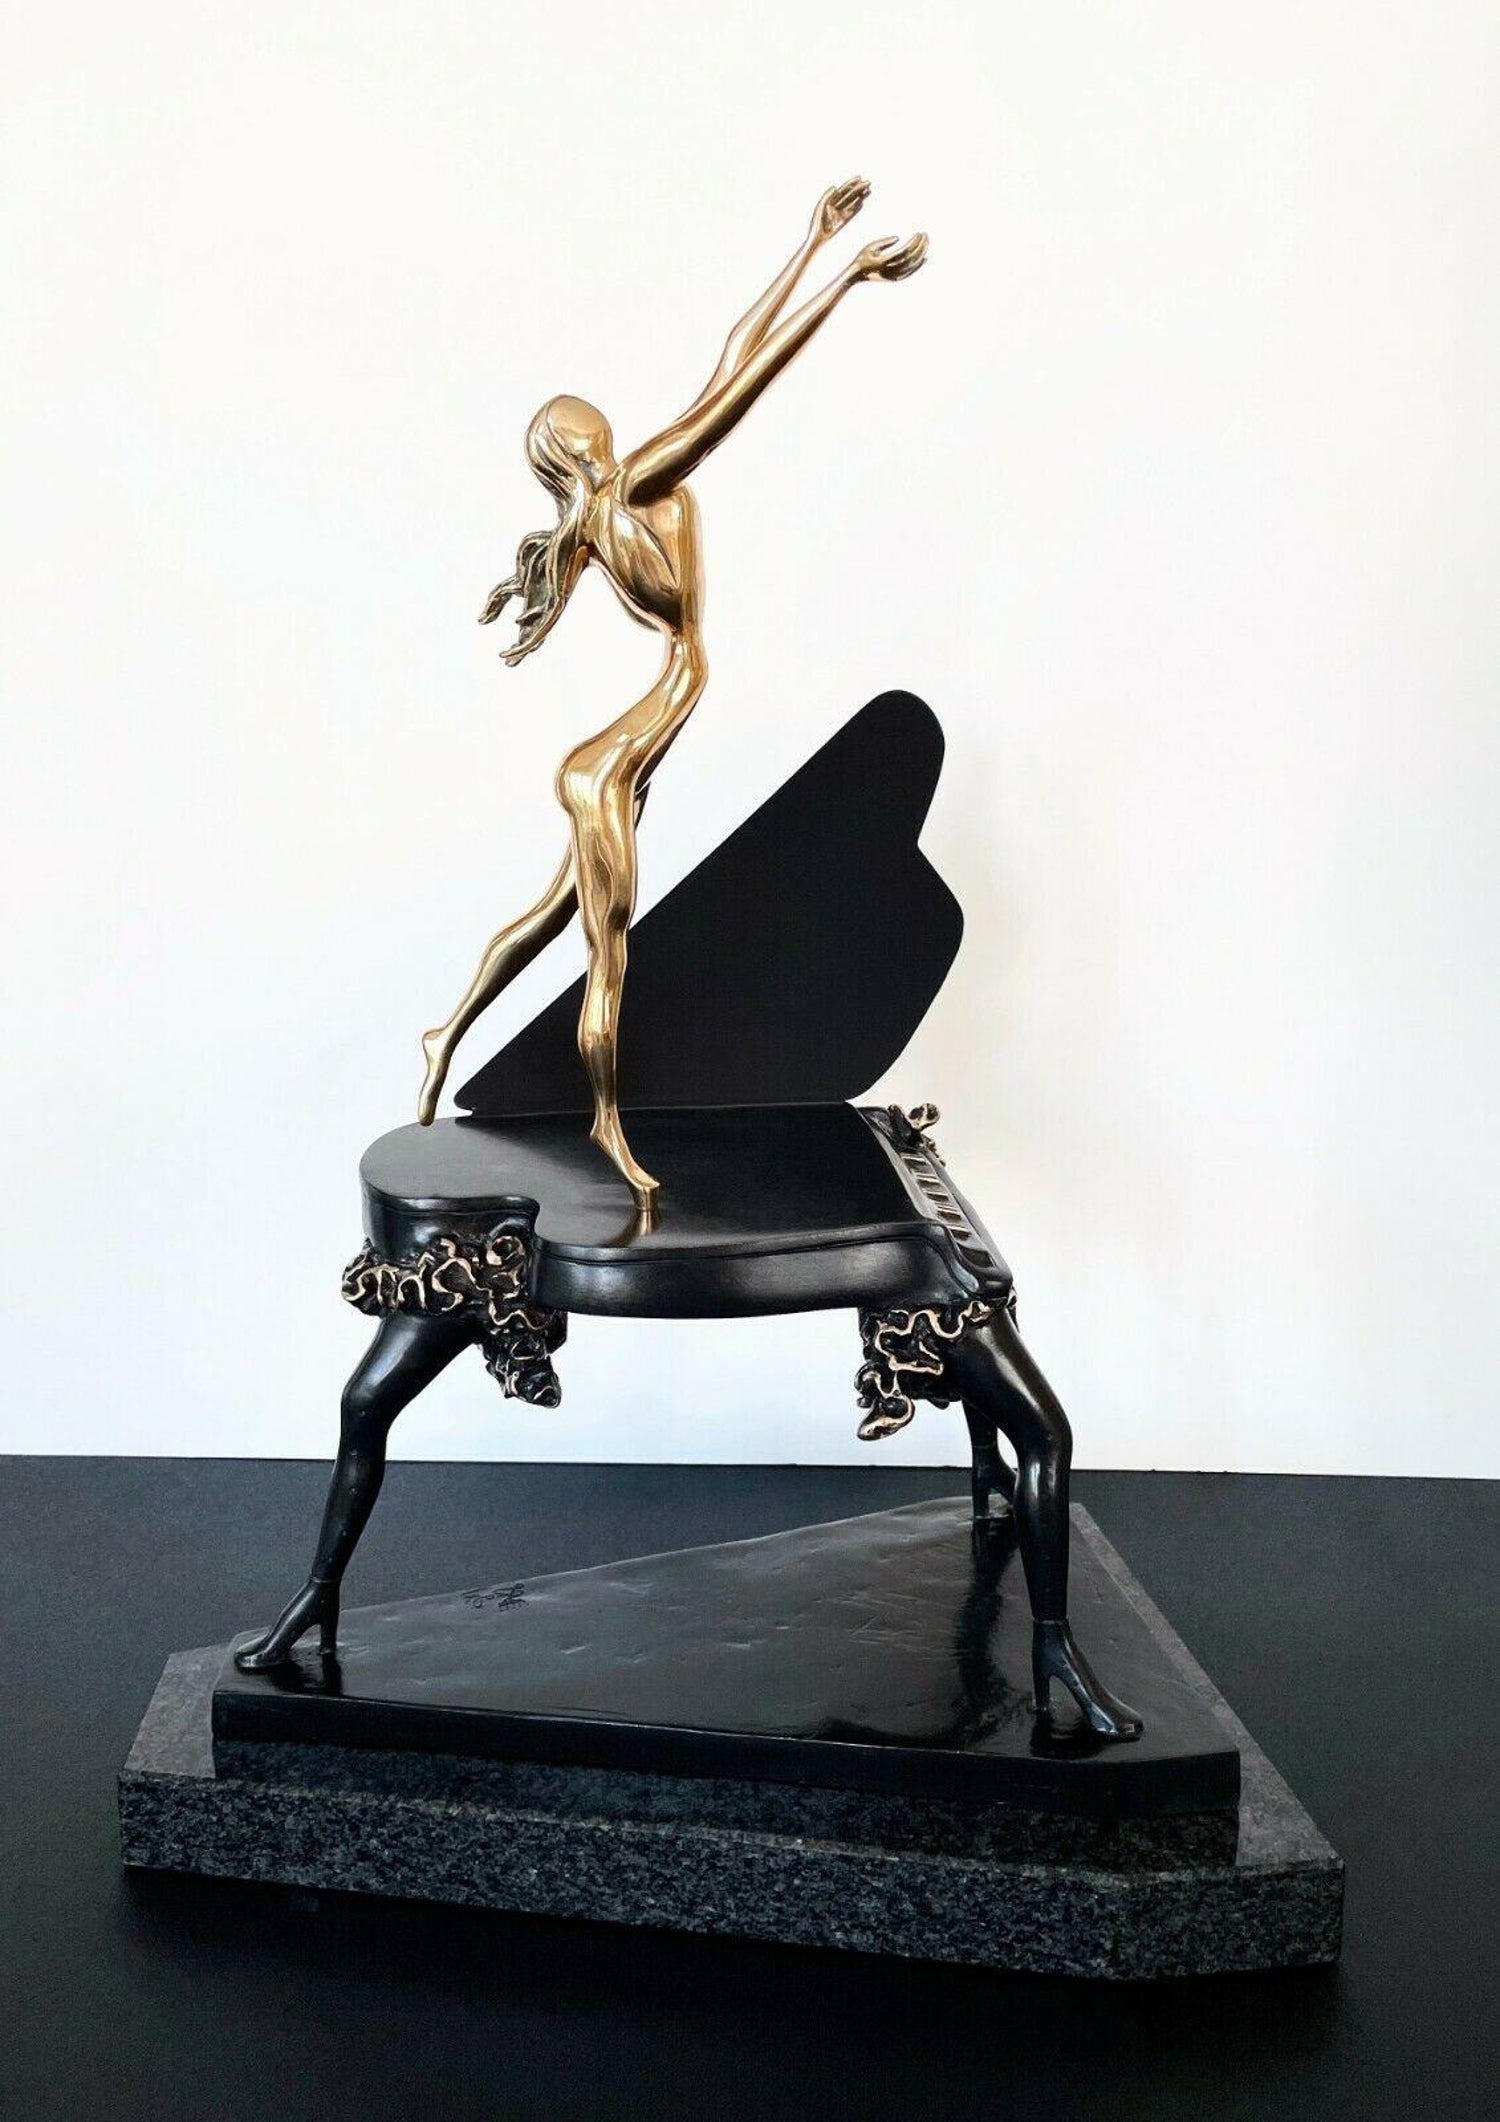 Surrealist Piano Salvador Dali - 3 For Sale on 1stDibs | salvador dali  piano painting, piano surrealism, dali surrealist